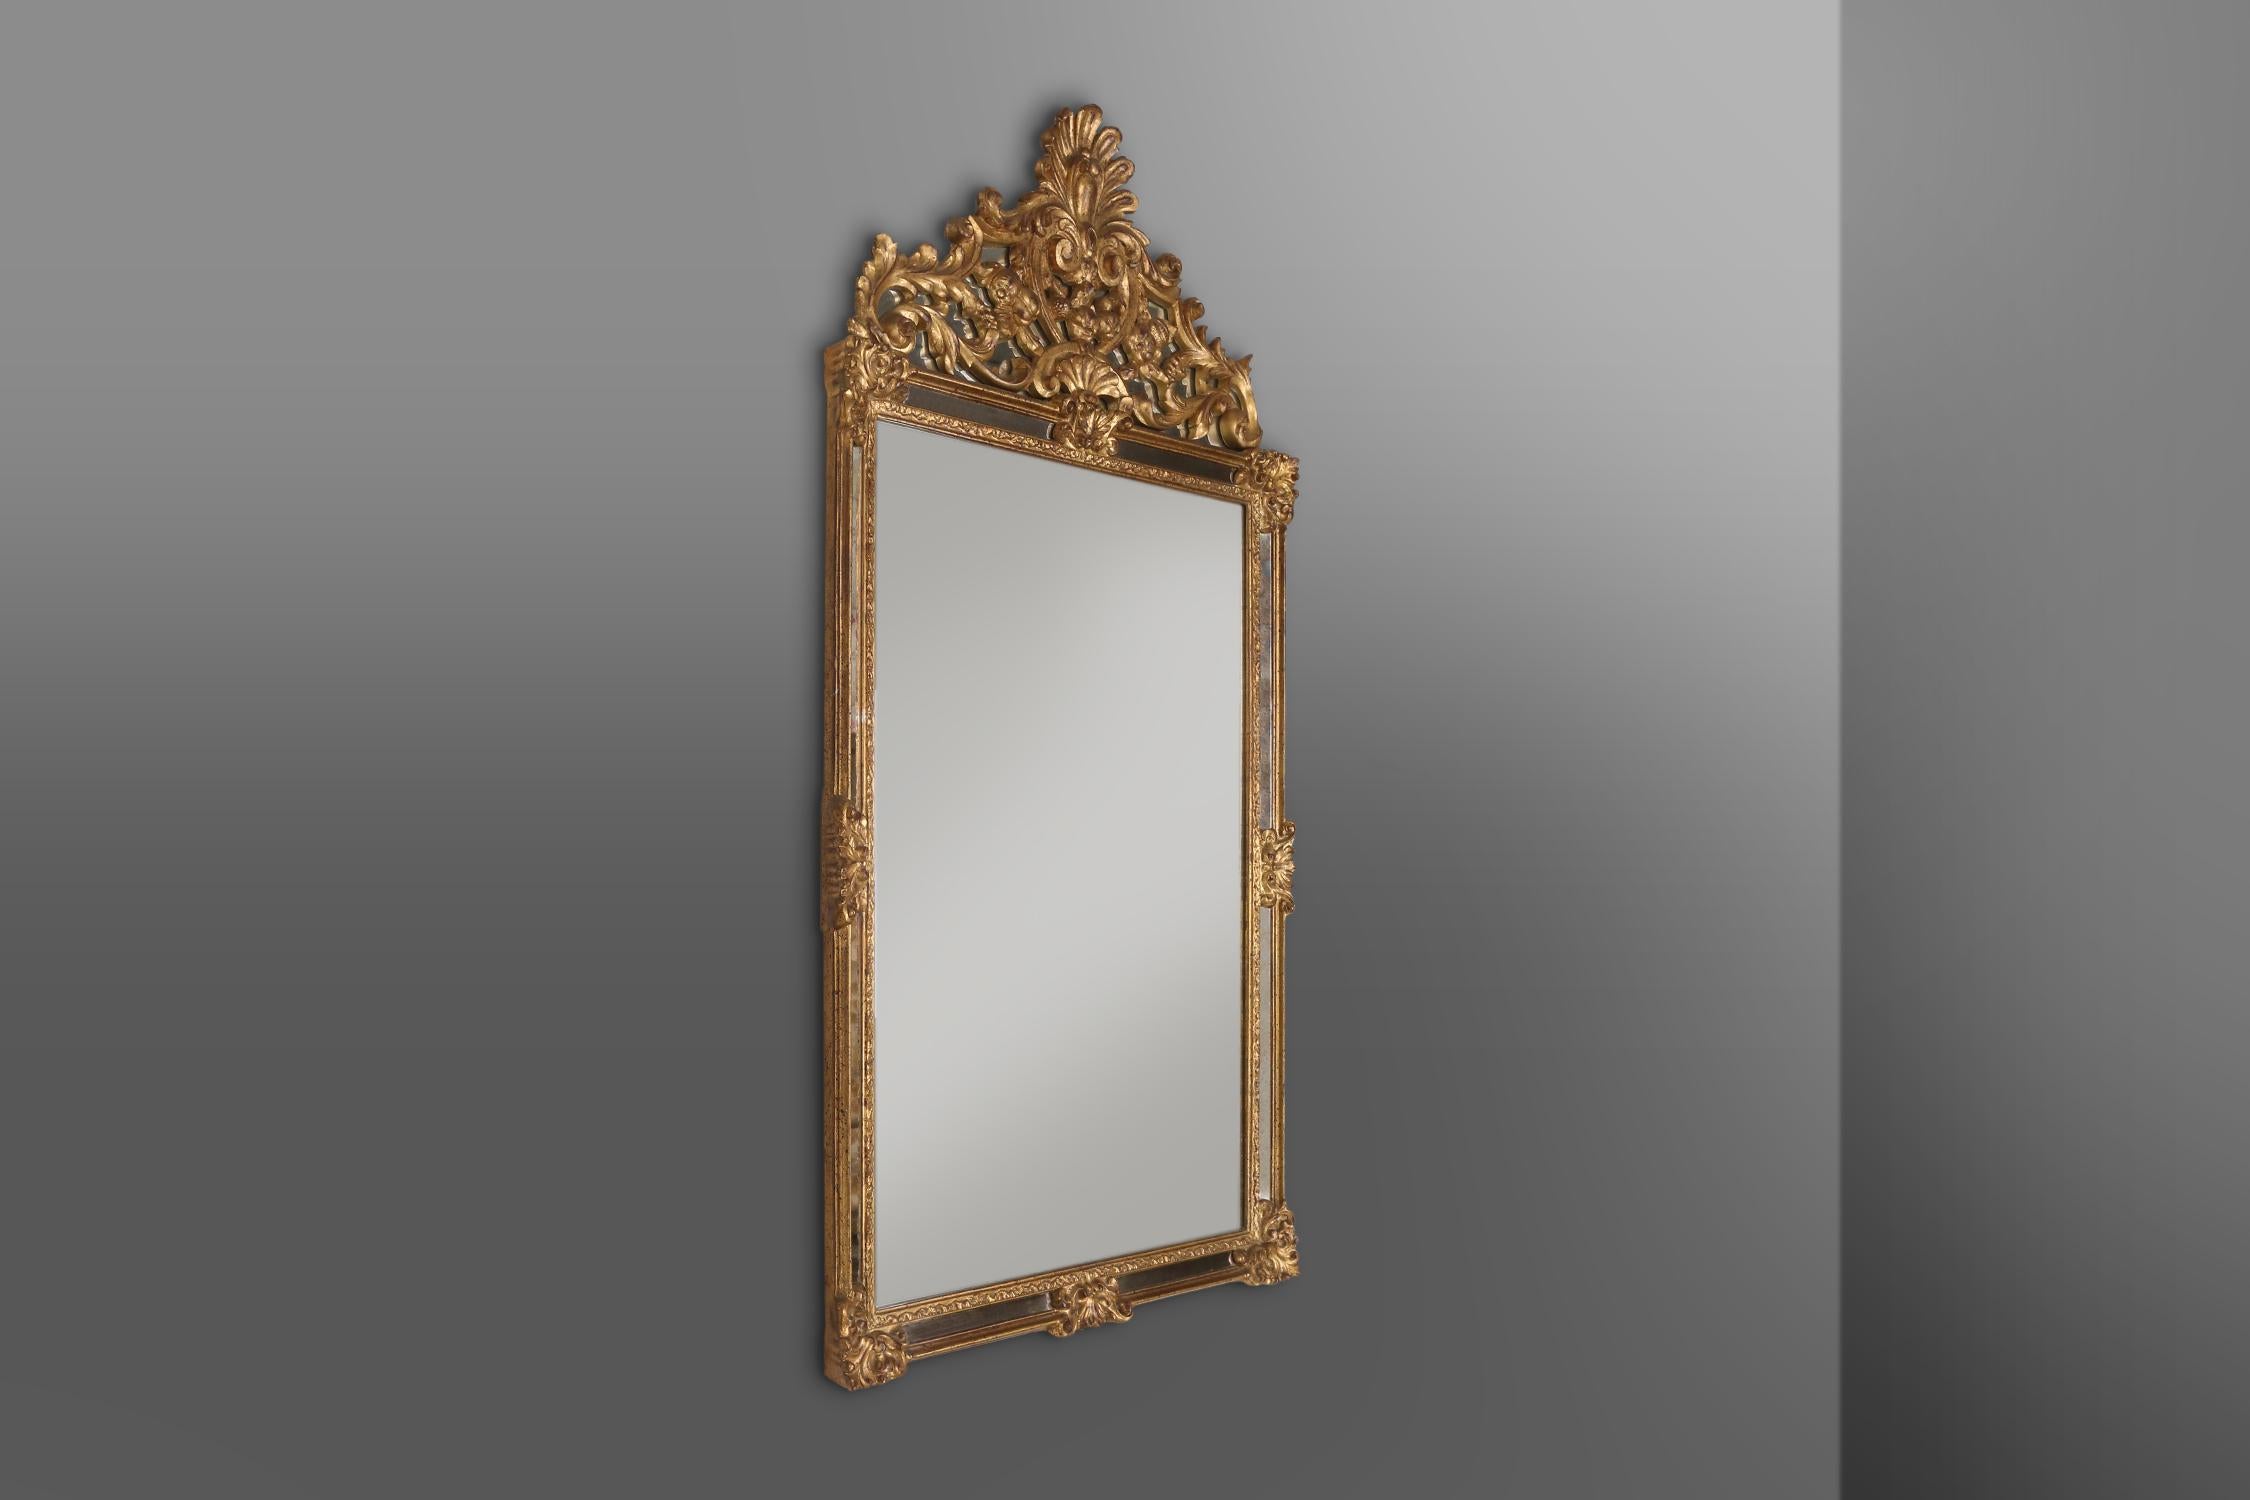 Großer vergoldeter Spiegel mit romantischen Verzierungen und antikem Aussehen. Hergestellt in Belgien von Deknudt in den siebziger Jahren. Der Spiegel hat einen rechteckigen Harzrahmen mit exquisiten Verzierungen und einer spektakulären Platte. Der